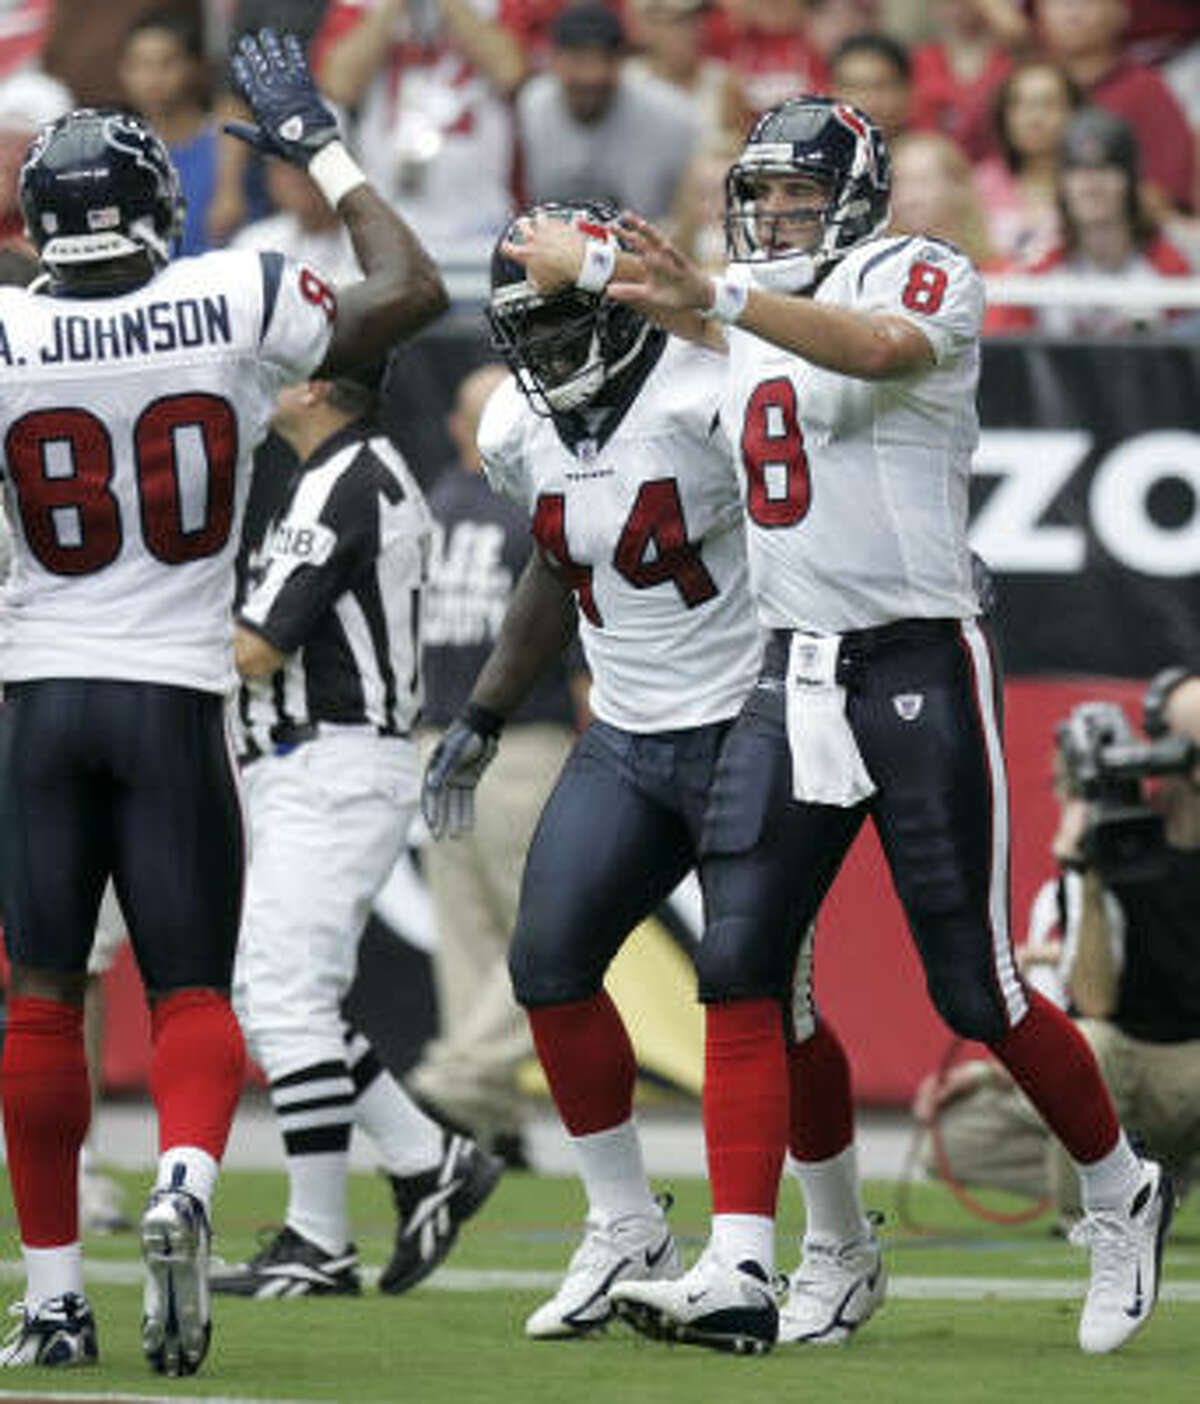 Matt Schaub's 5-yard touchdown run gave the Texans some early momentum.